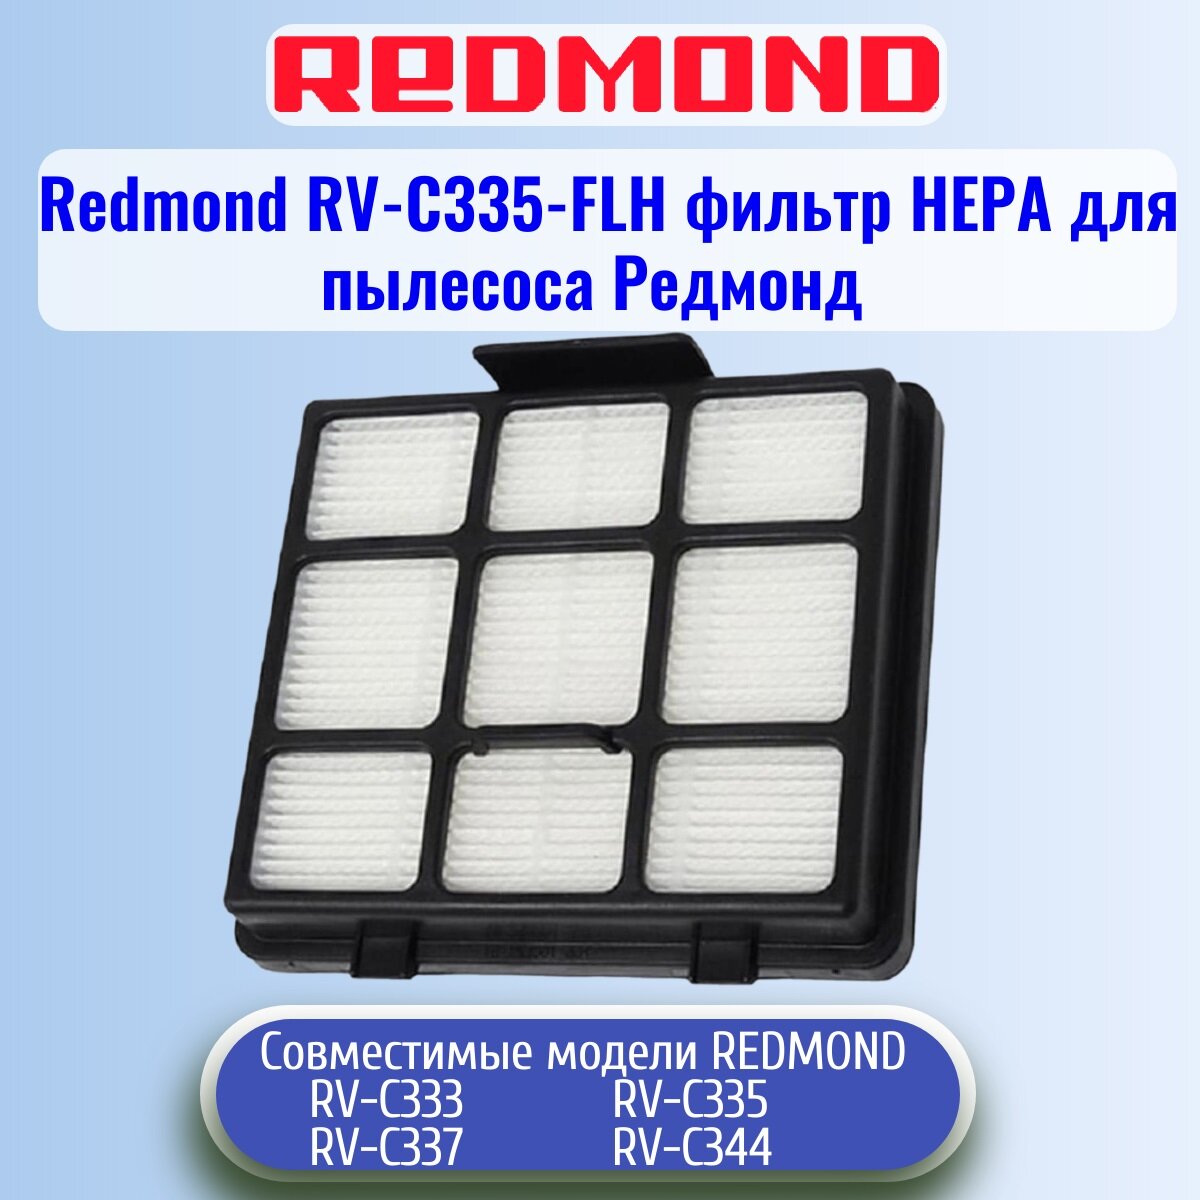 Redmond RV-C335-FLH фильтр нера для пылесоса RV-C335